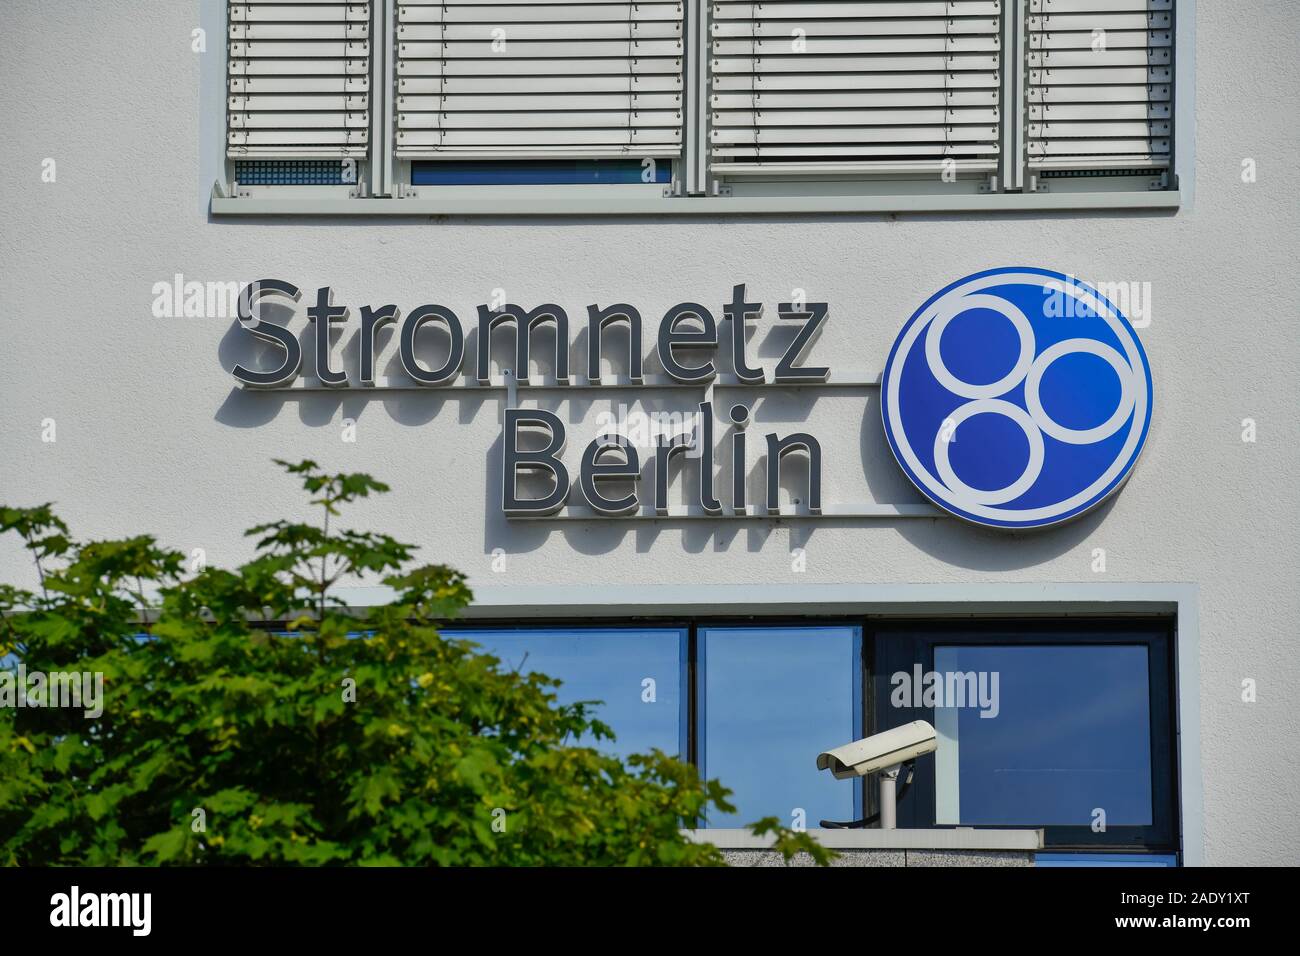 Stromnetz Berlin GmbH, Eichenstraße, Treptow, Treptow-Köpenick, Berlin, Deutschland Stock Photo